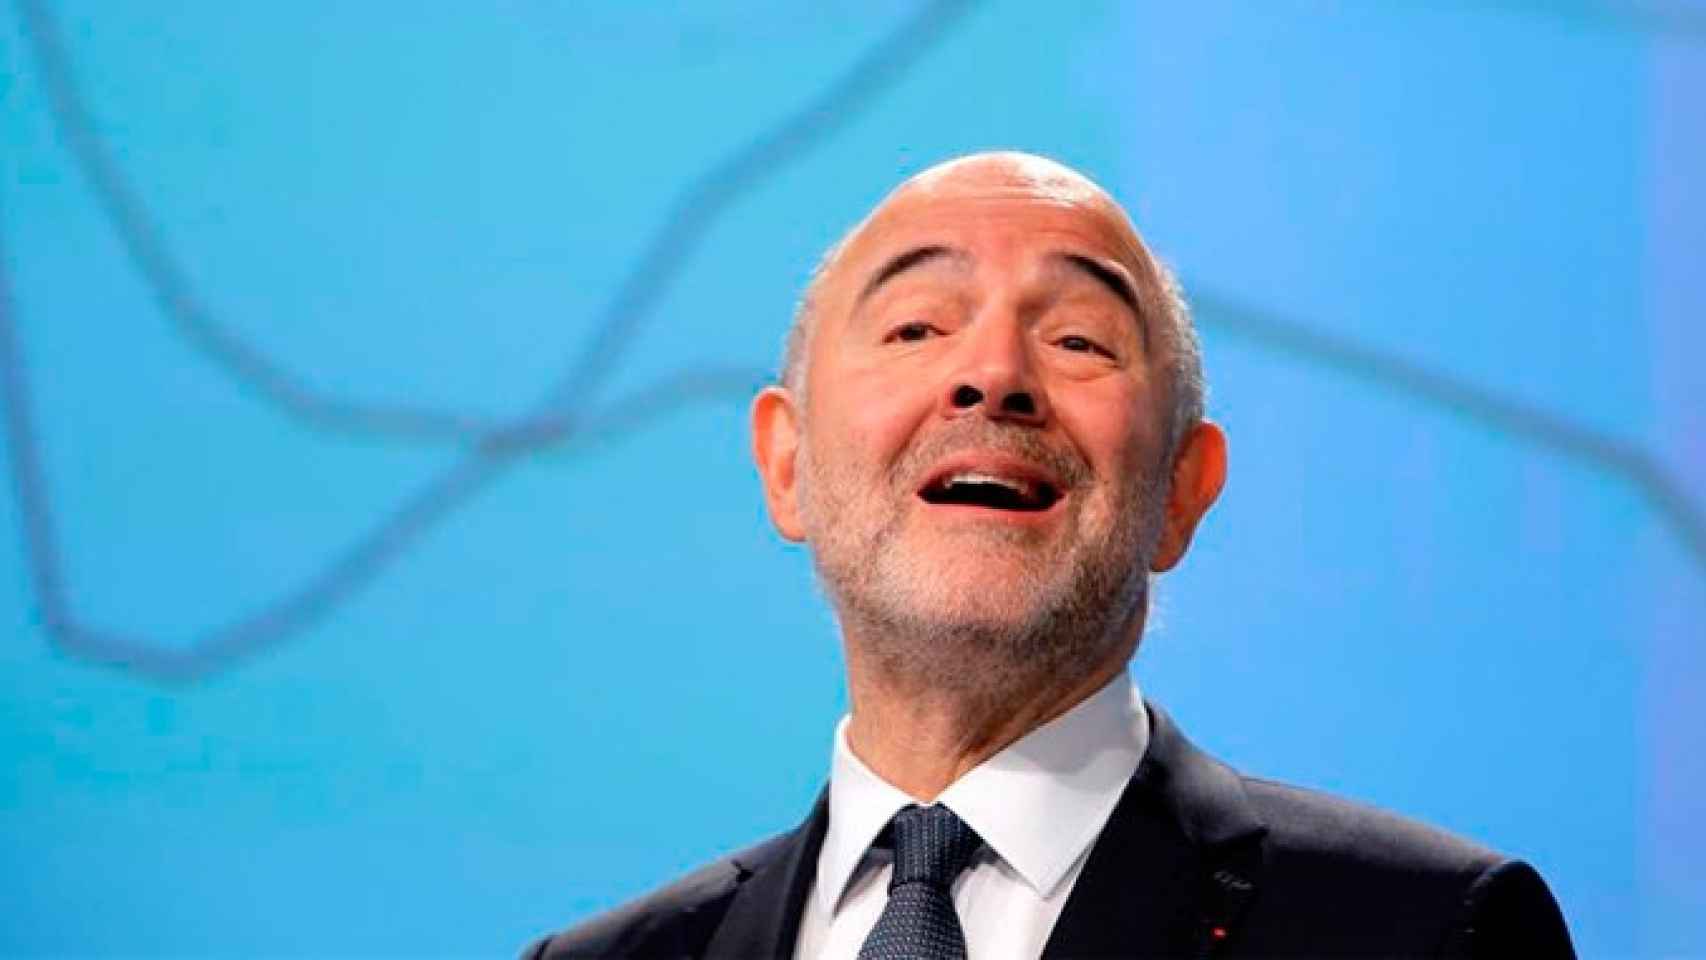 El comisario europeo de Asuntos Económicos y Financieros, Pierre Moscovici, presenta las previsiones económicas de otoño para la eurozona / EFE